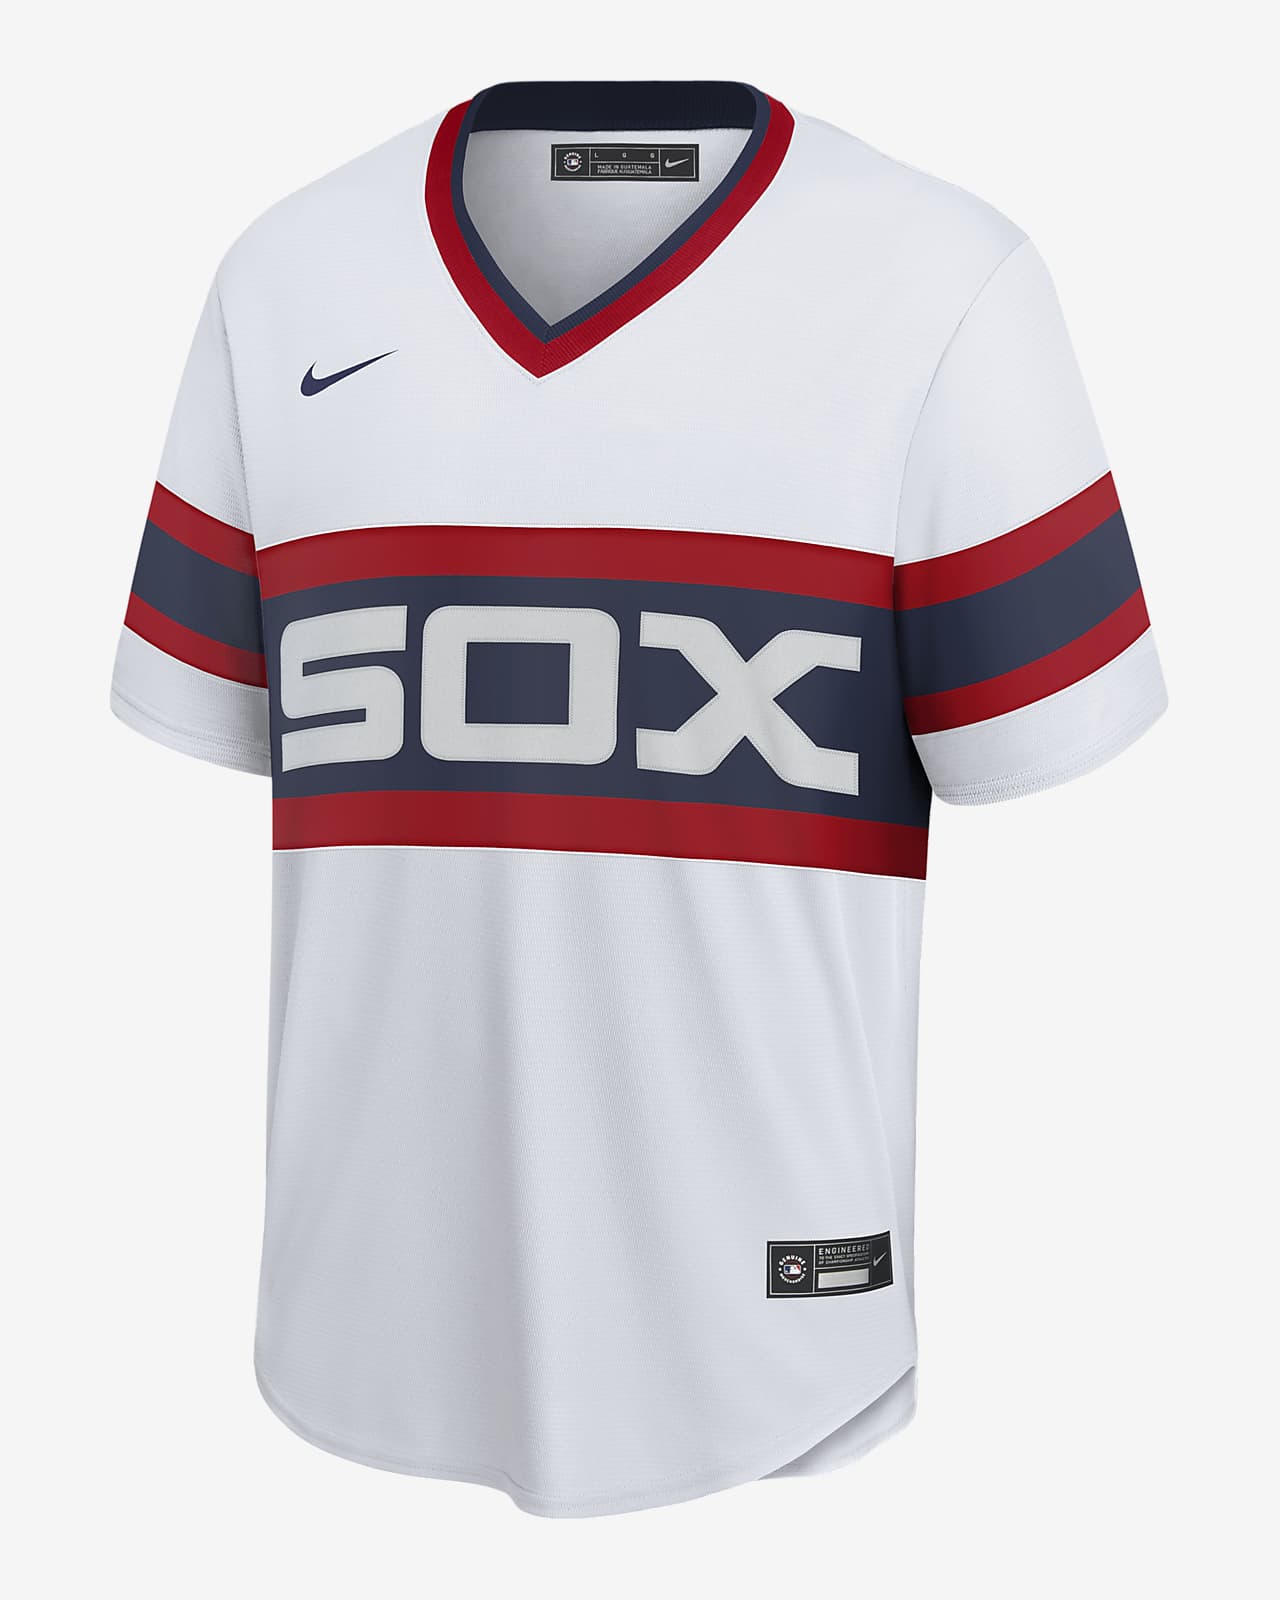 sox baseball jerseys